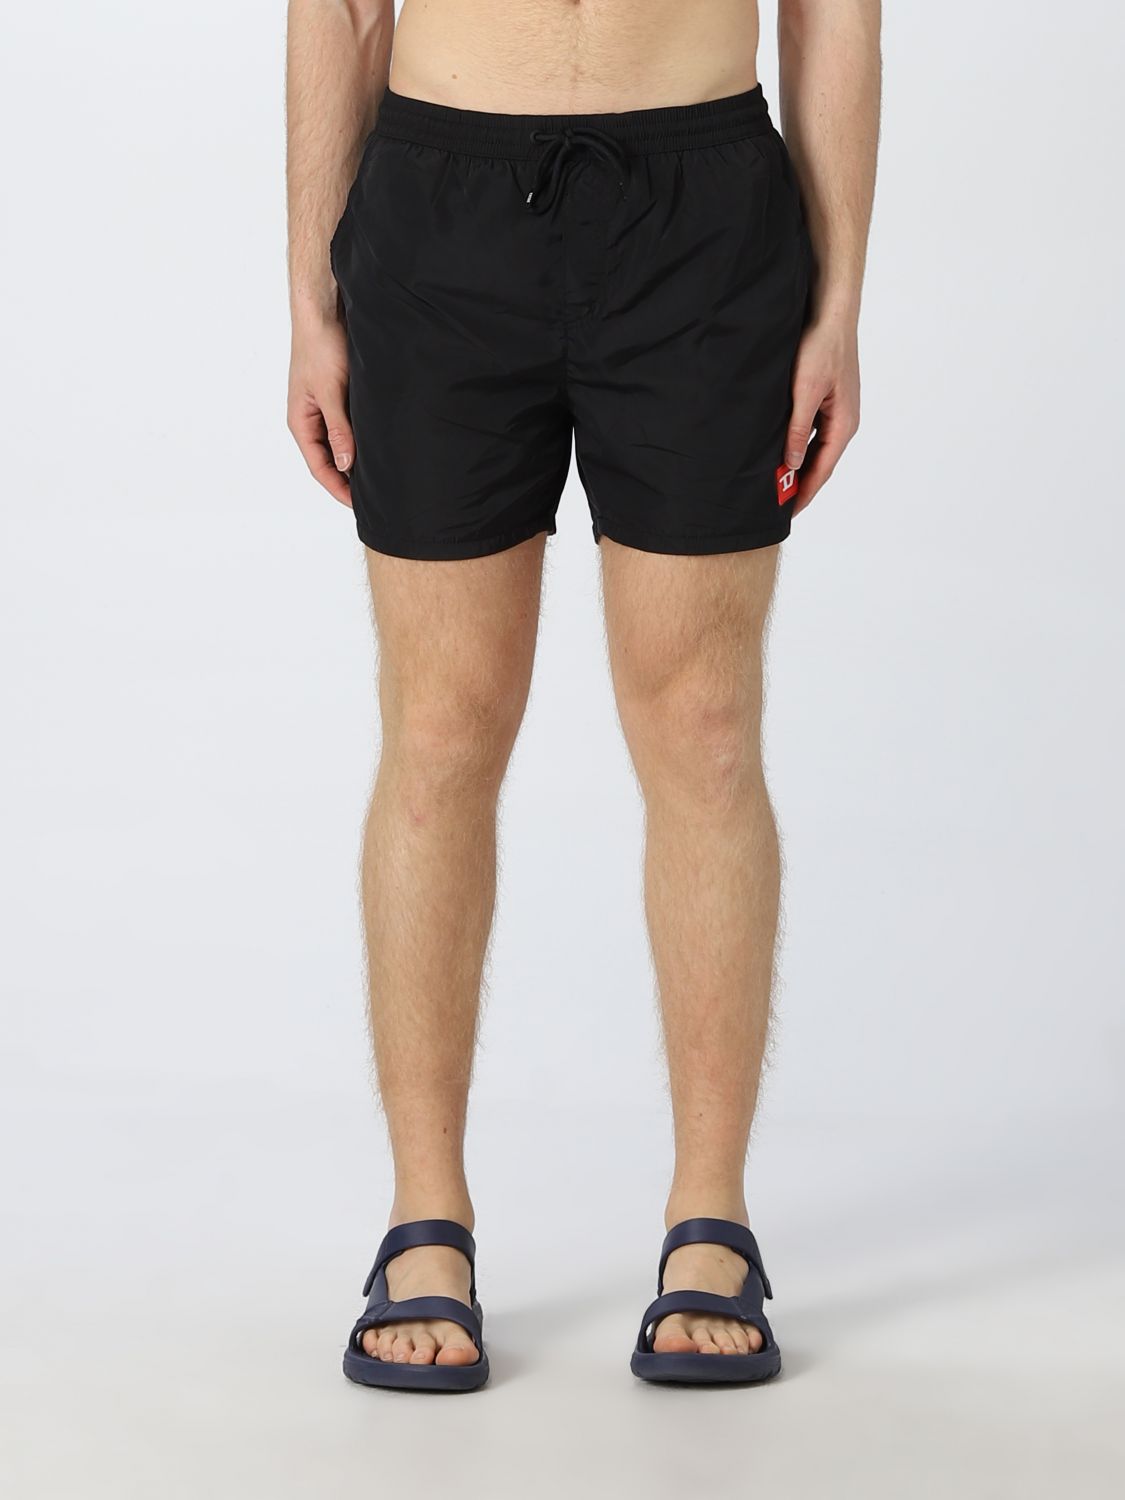 DIESEL: swimsuit for men - Black | Diesel swimsuit A052630QEAP online ...